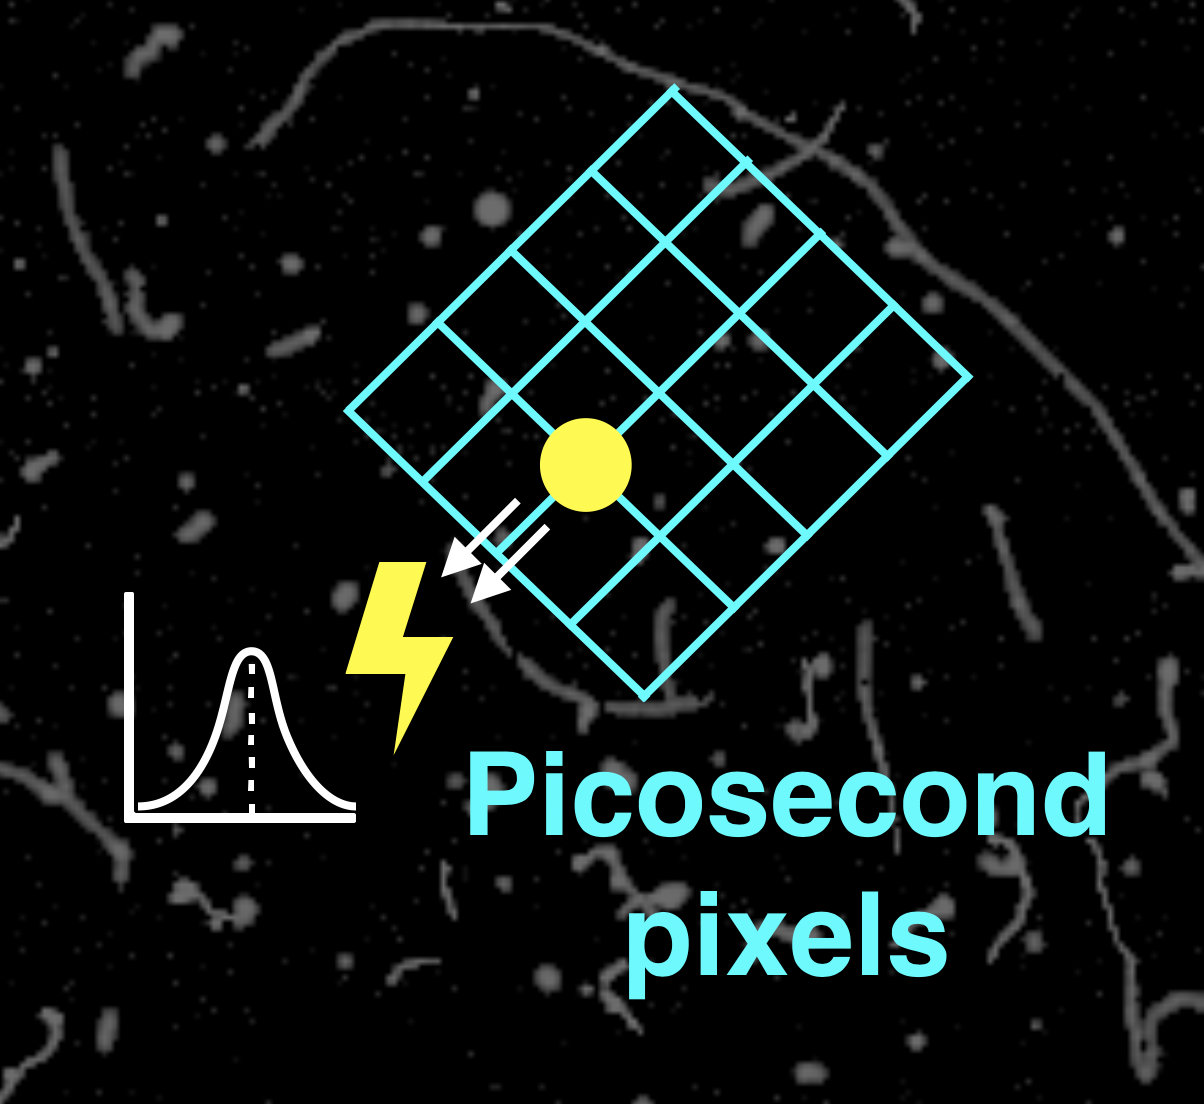 Picosecond pixels